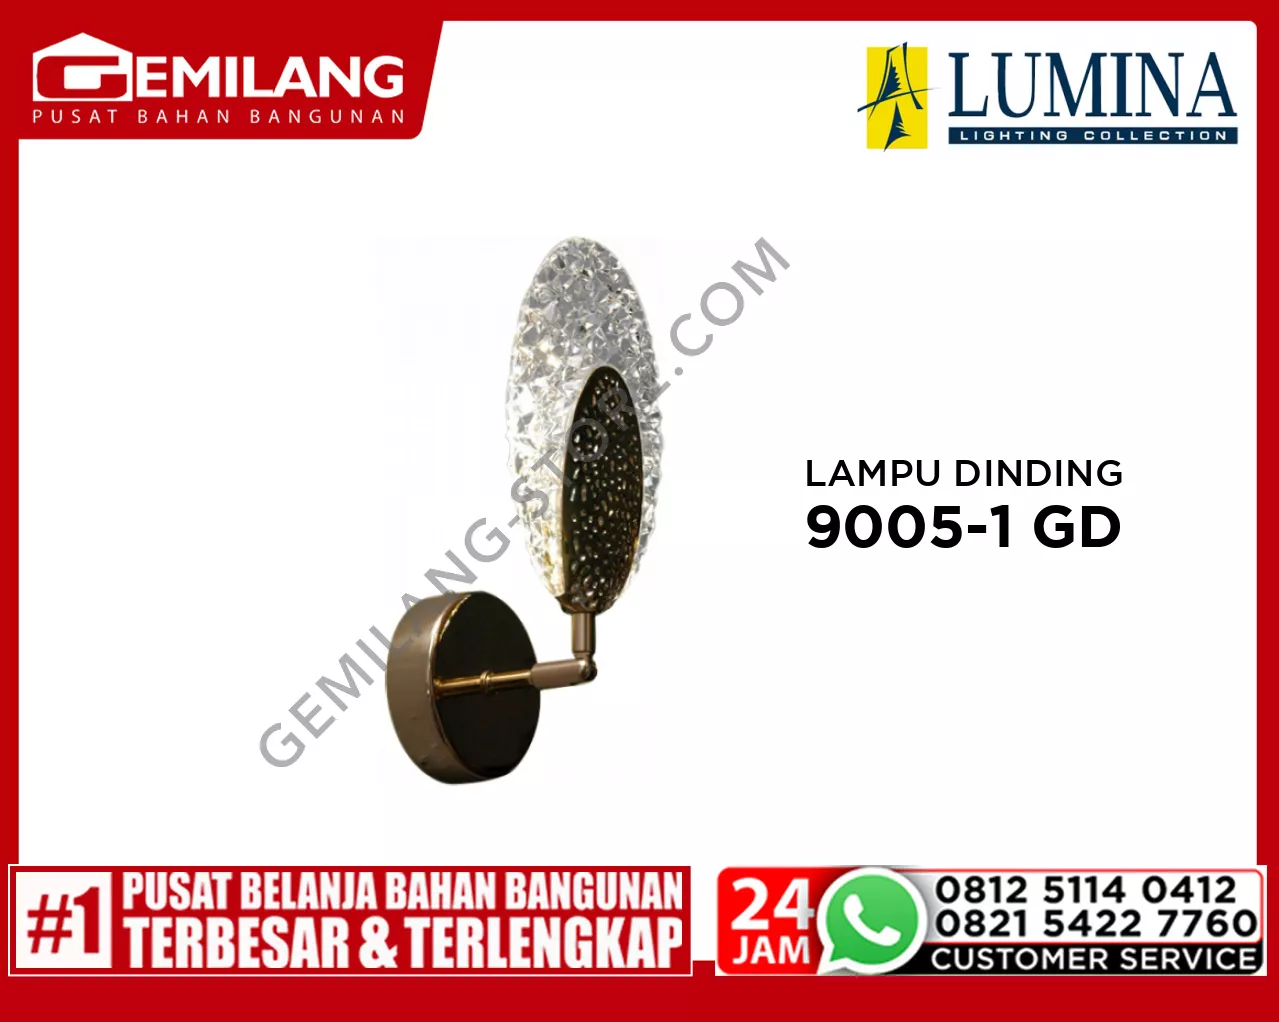 LAMPU DINDING 9005-1 GOLD